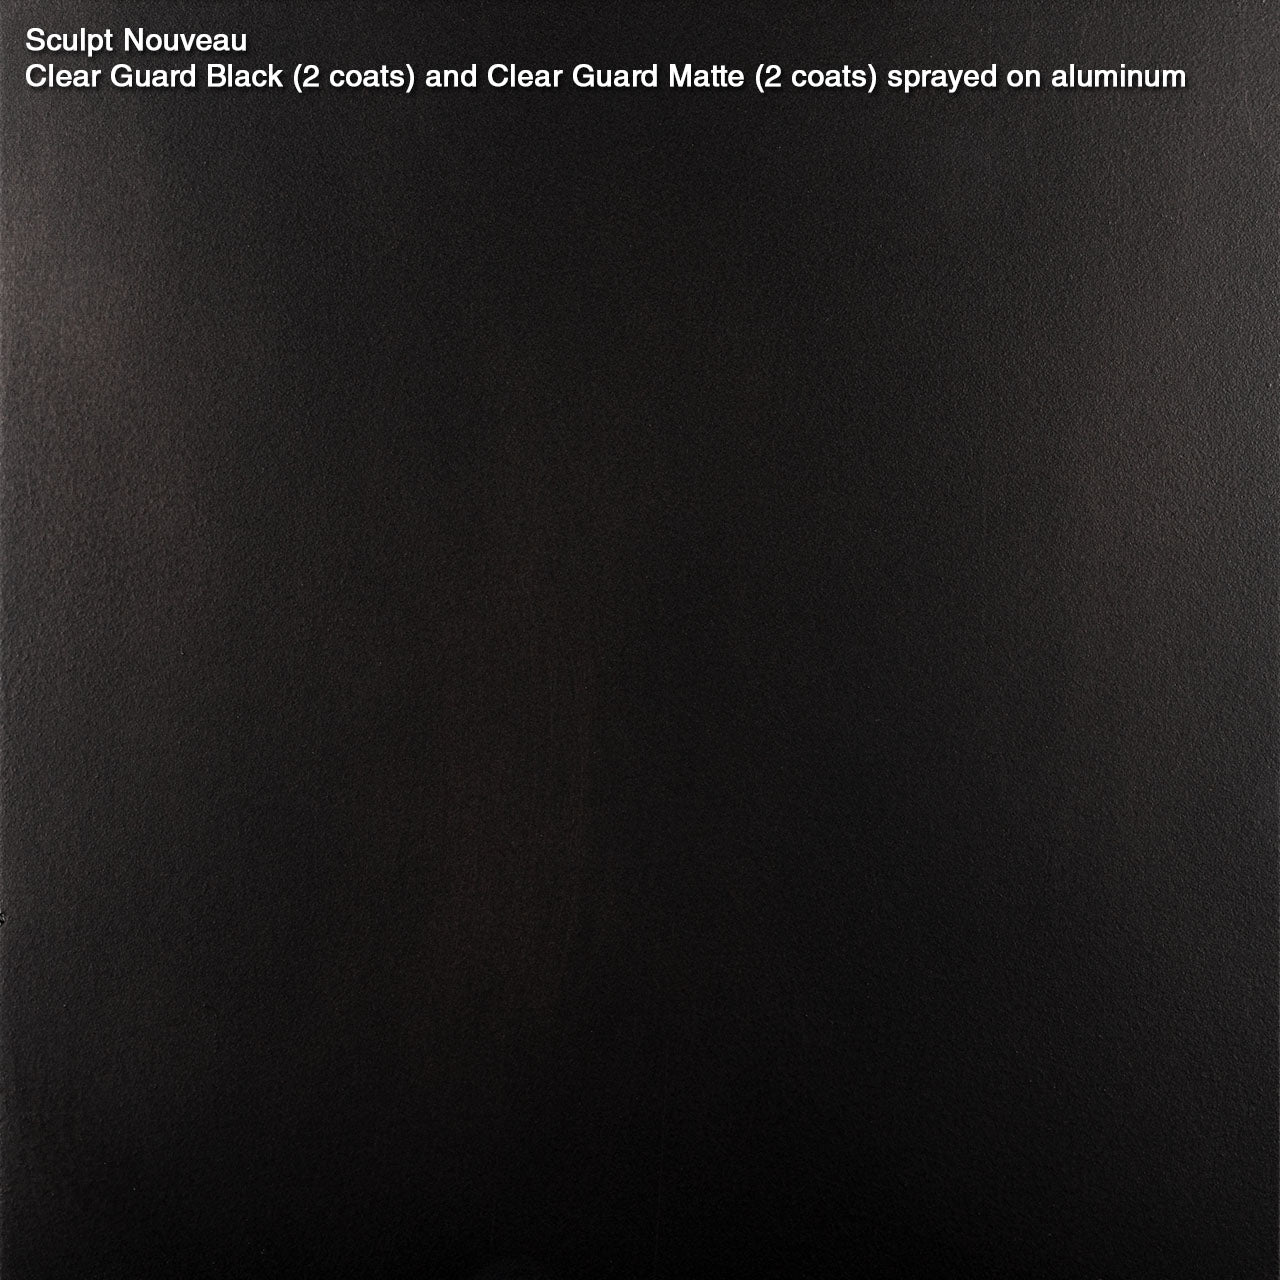 Clear Guard Black – Sculpt Nouveau